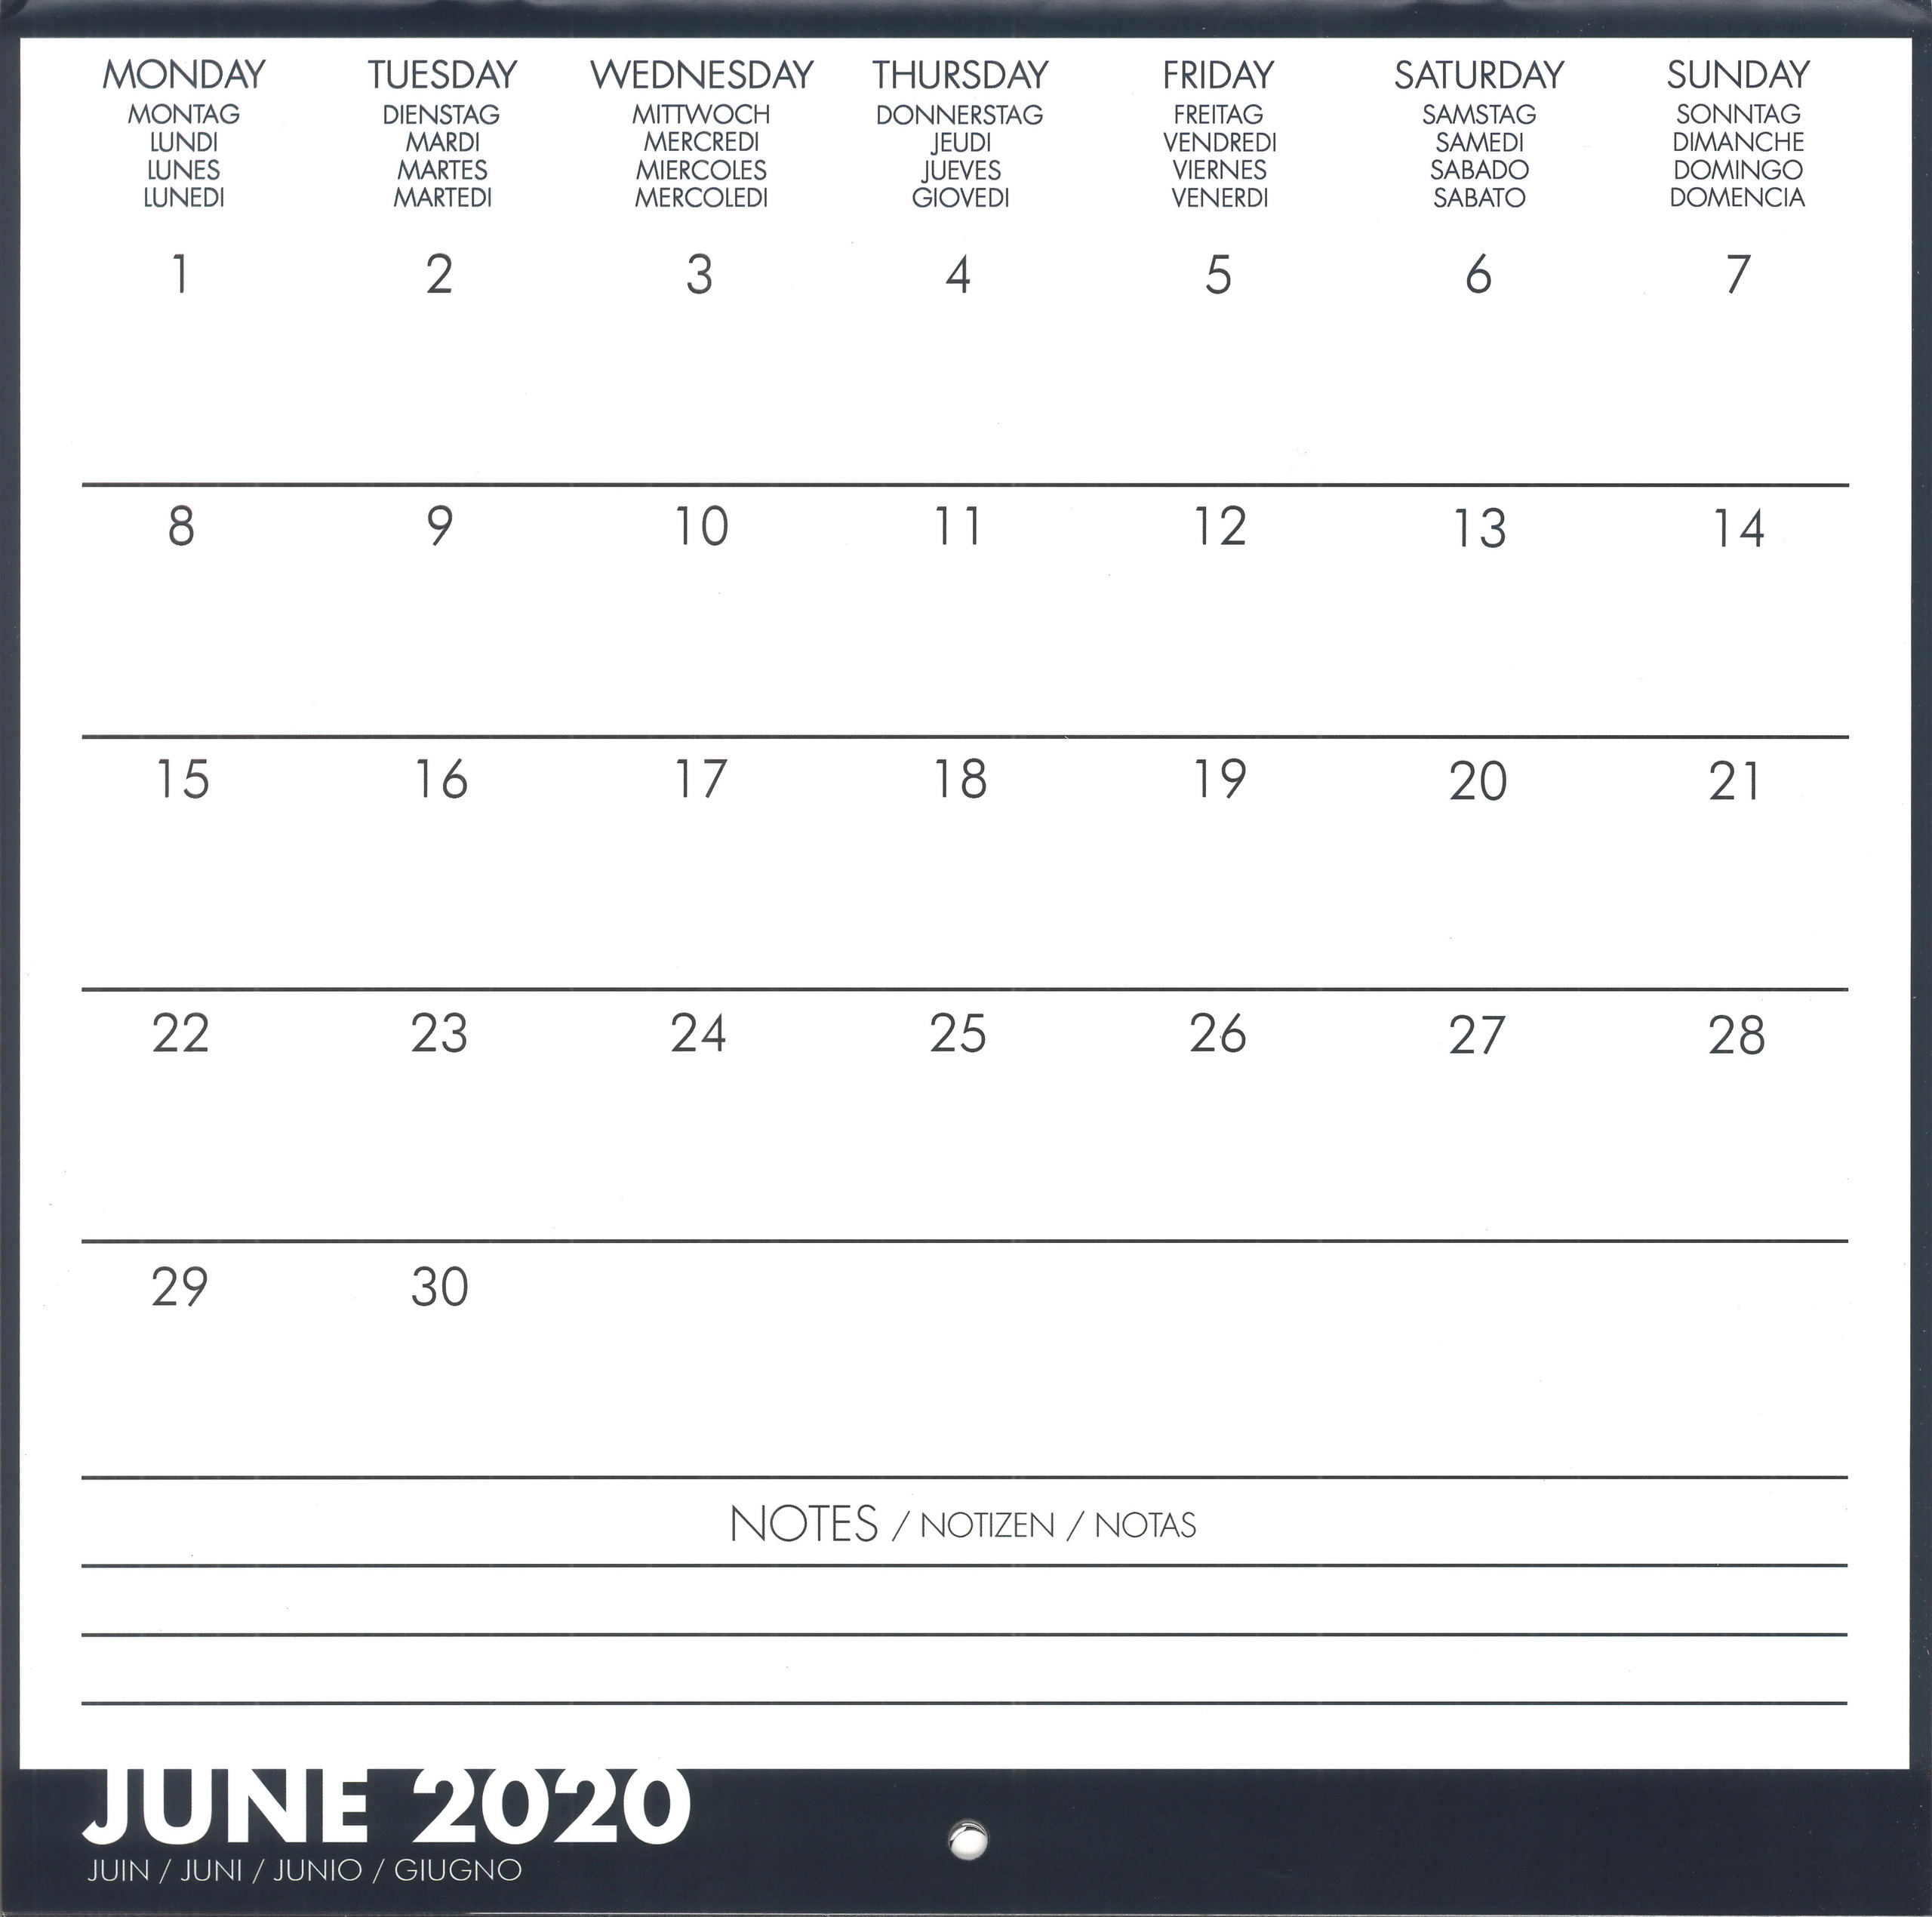 20200101-calendar-unofficial-uk-006b